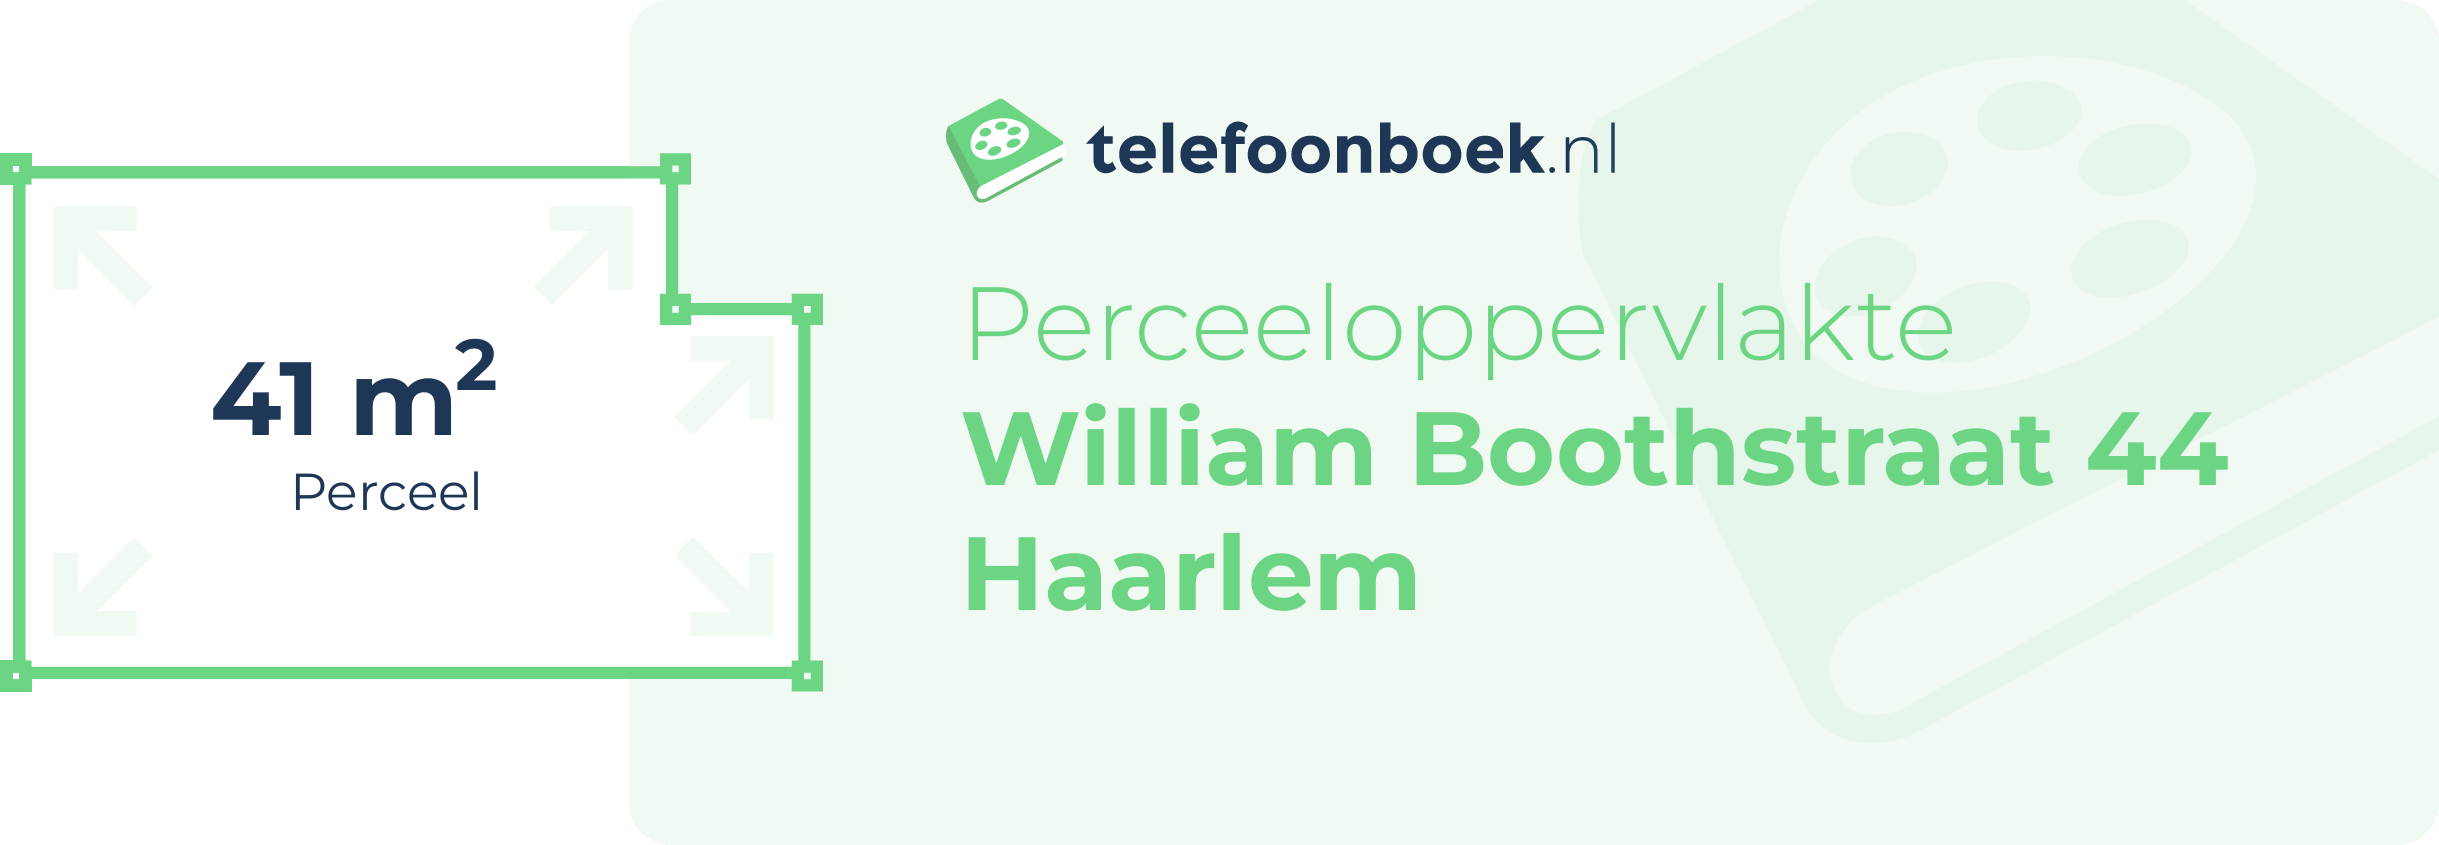 Perceeloppervlakte William Boothstraat 44 Haarlem